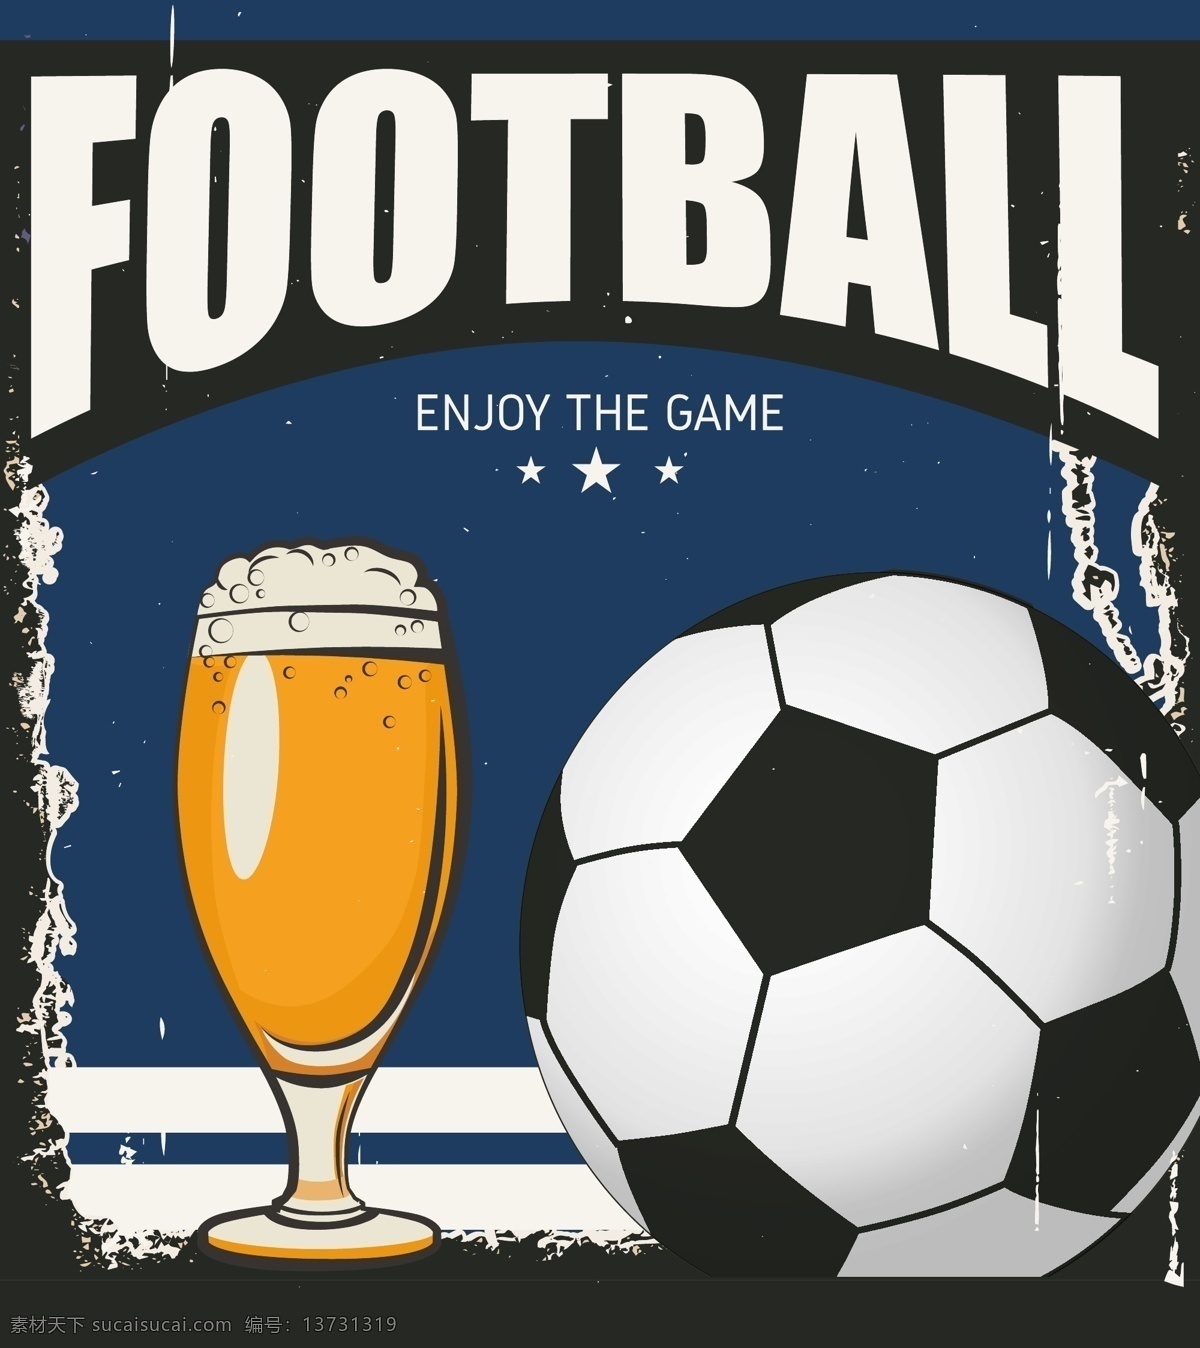 啤酒 足球 海报 矢量 创意 矢量素材 背景素材 卡通 设计素材